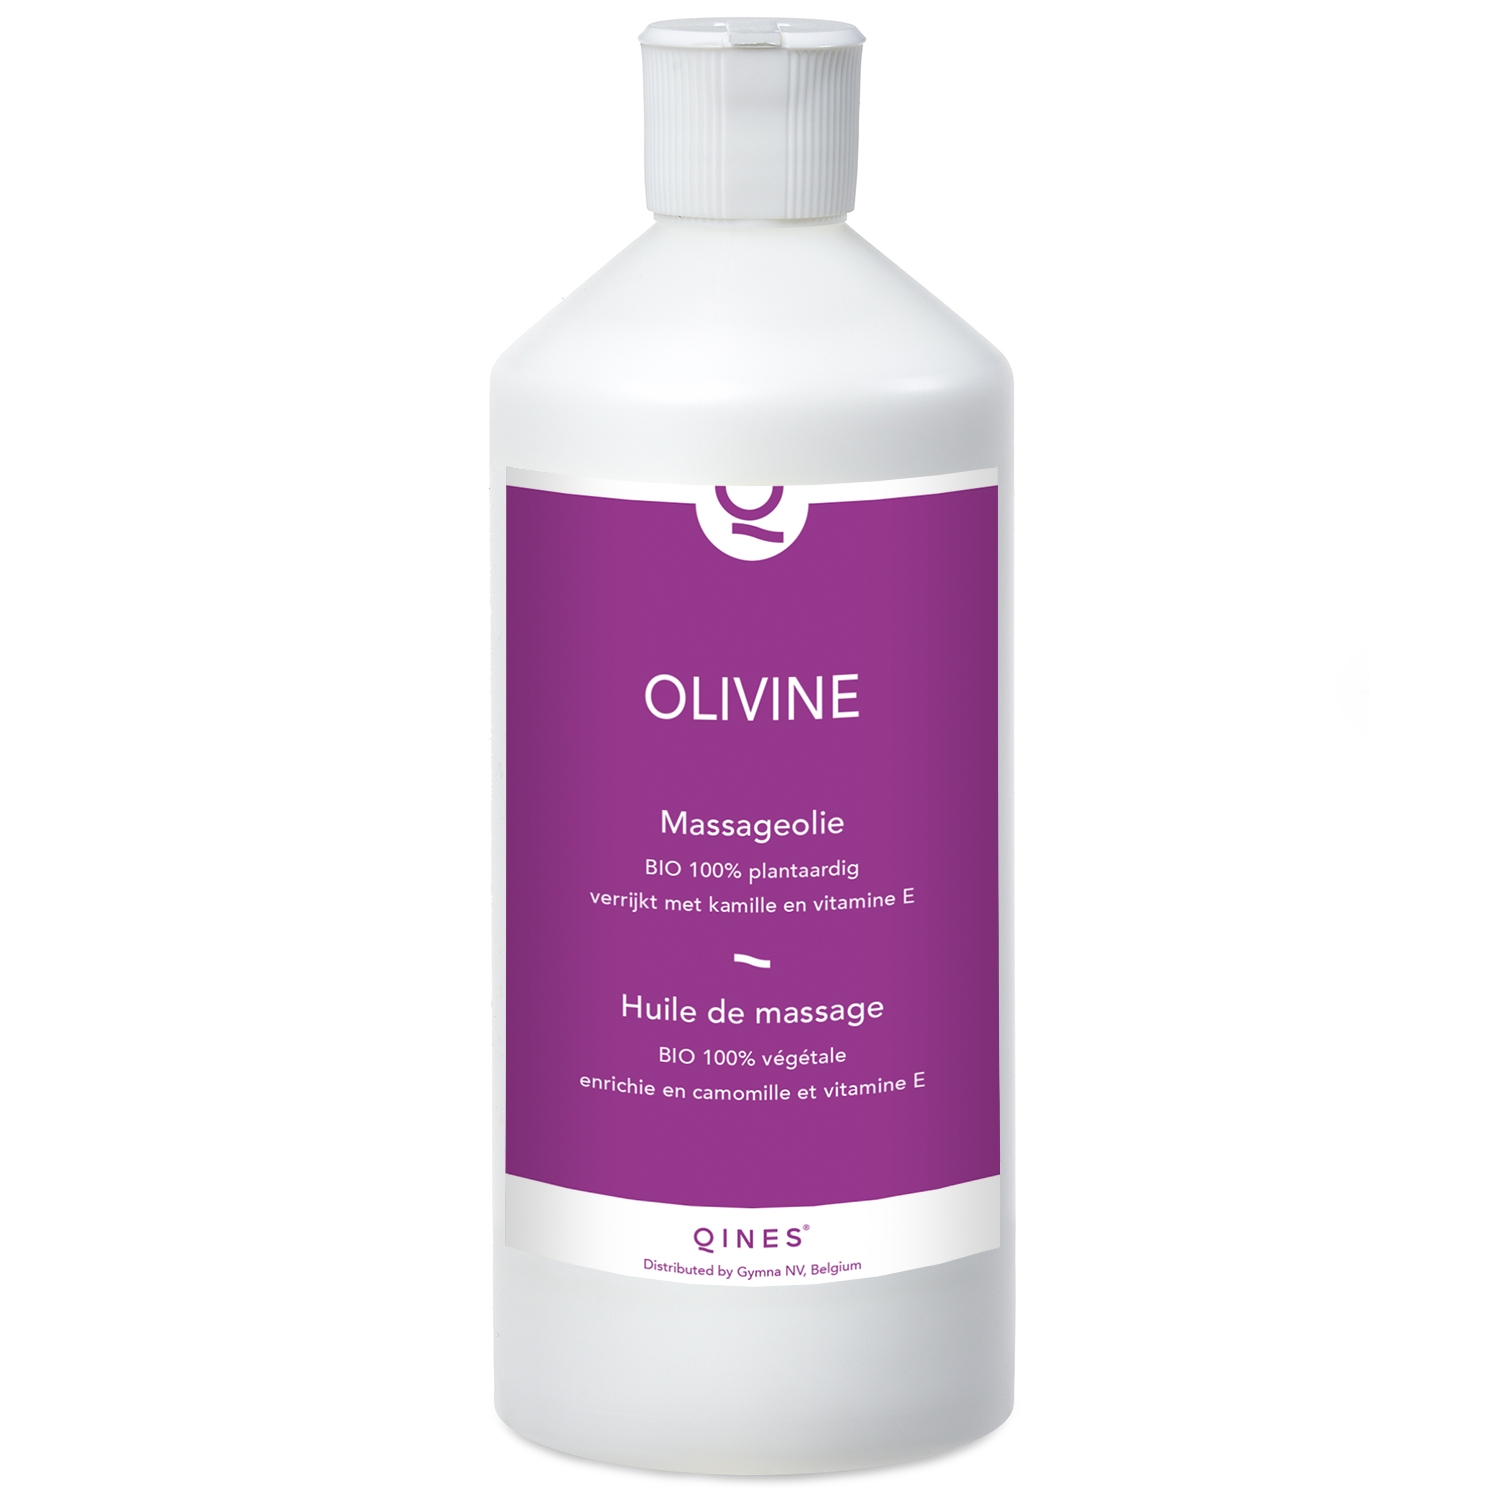 Massage olie Olivine bio - Qines - 500 ml